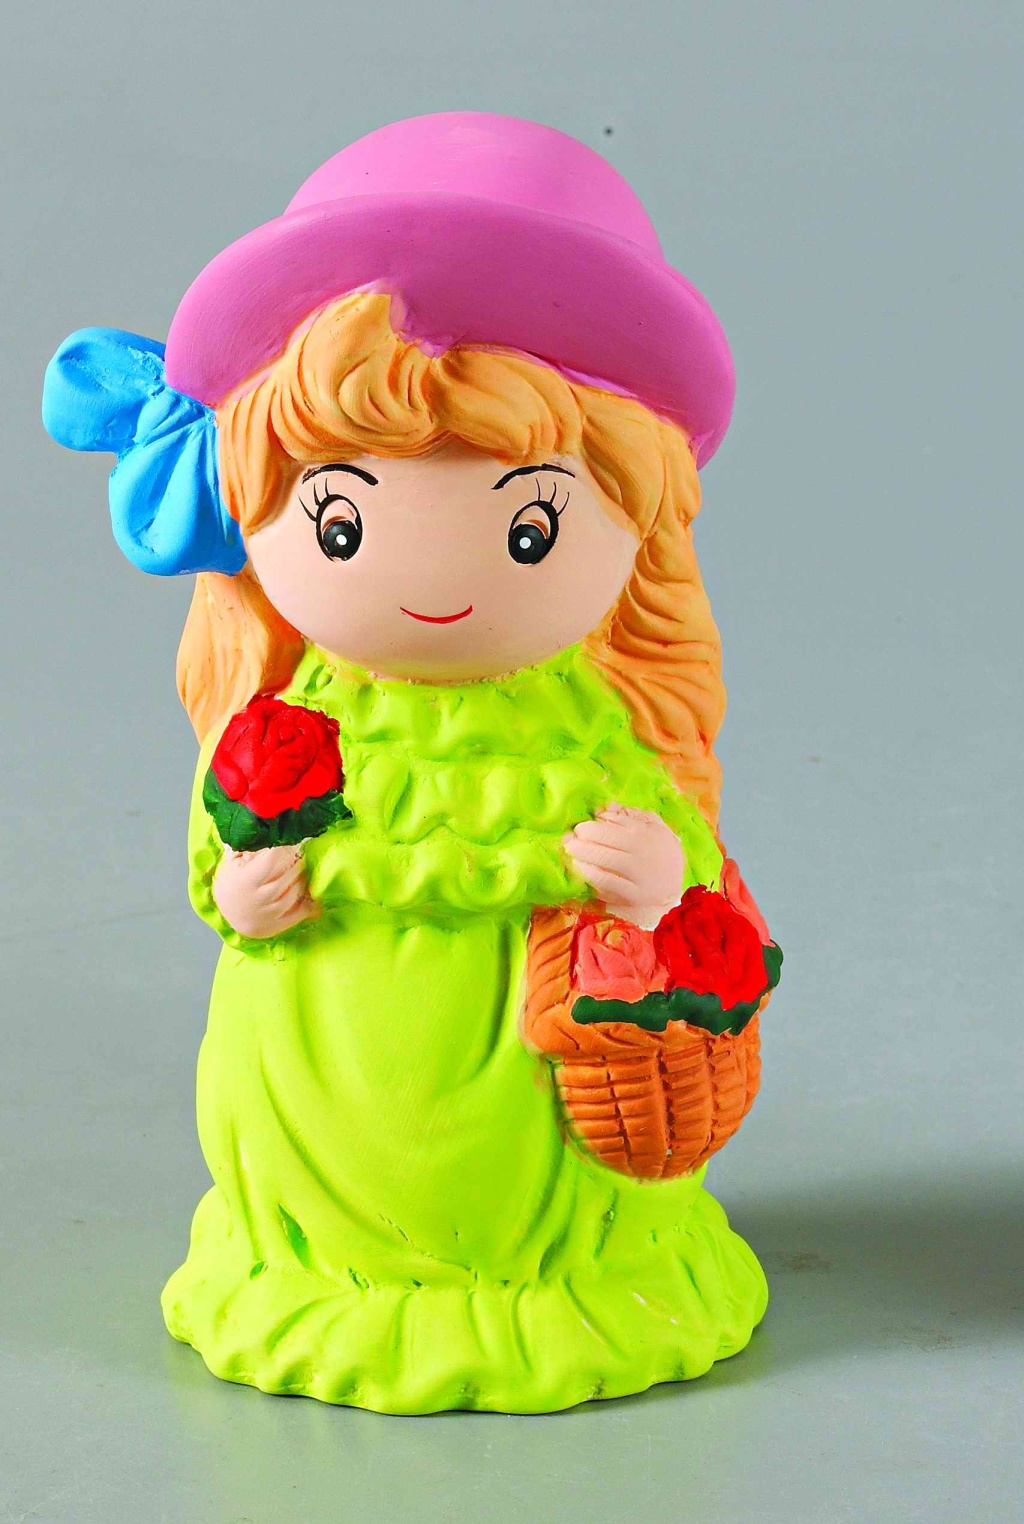 老玩具塑料娃娃-价格:780元-se87561102-其他玩偶/人偶-零售-7788收藏__收藏热线